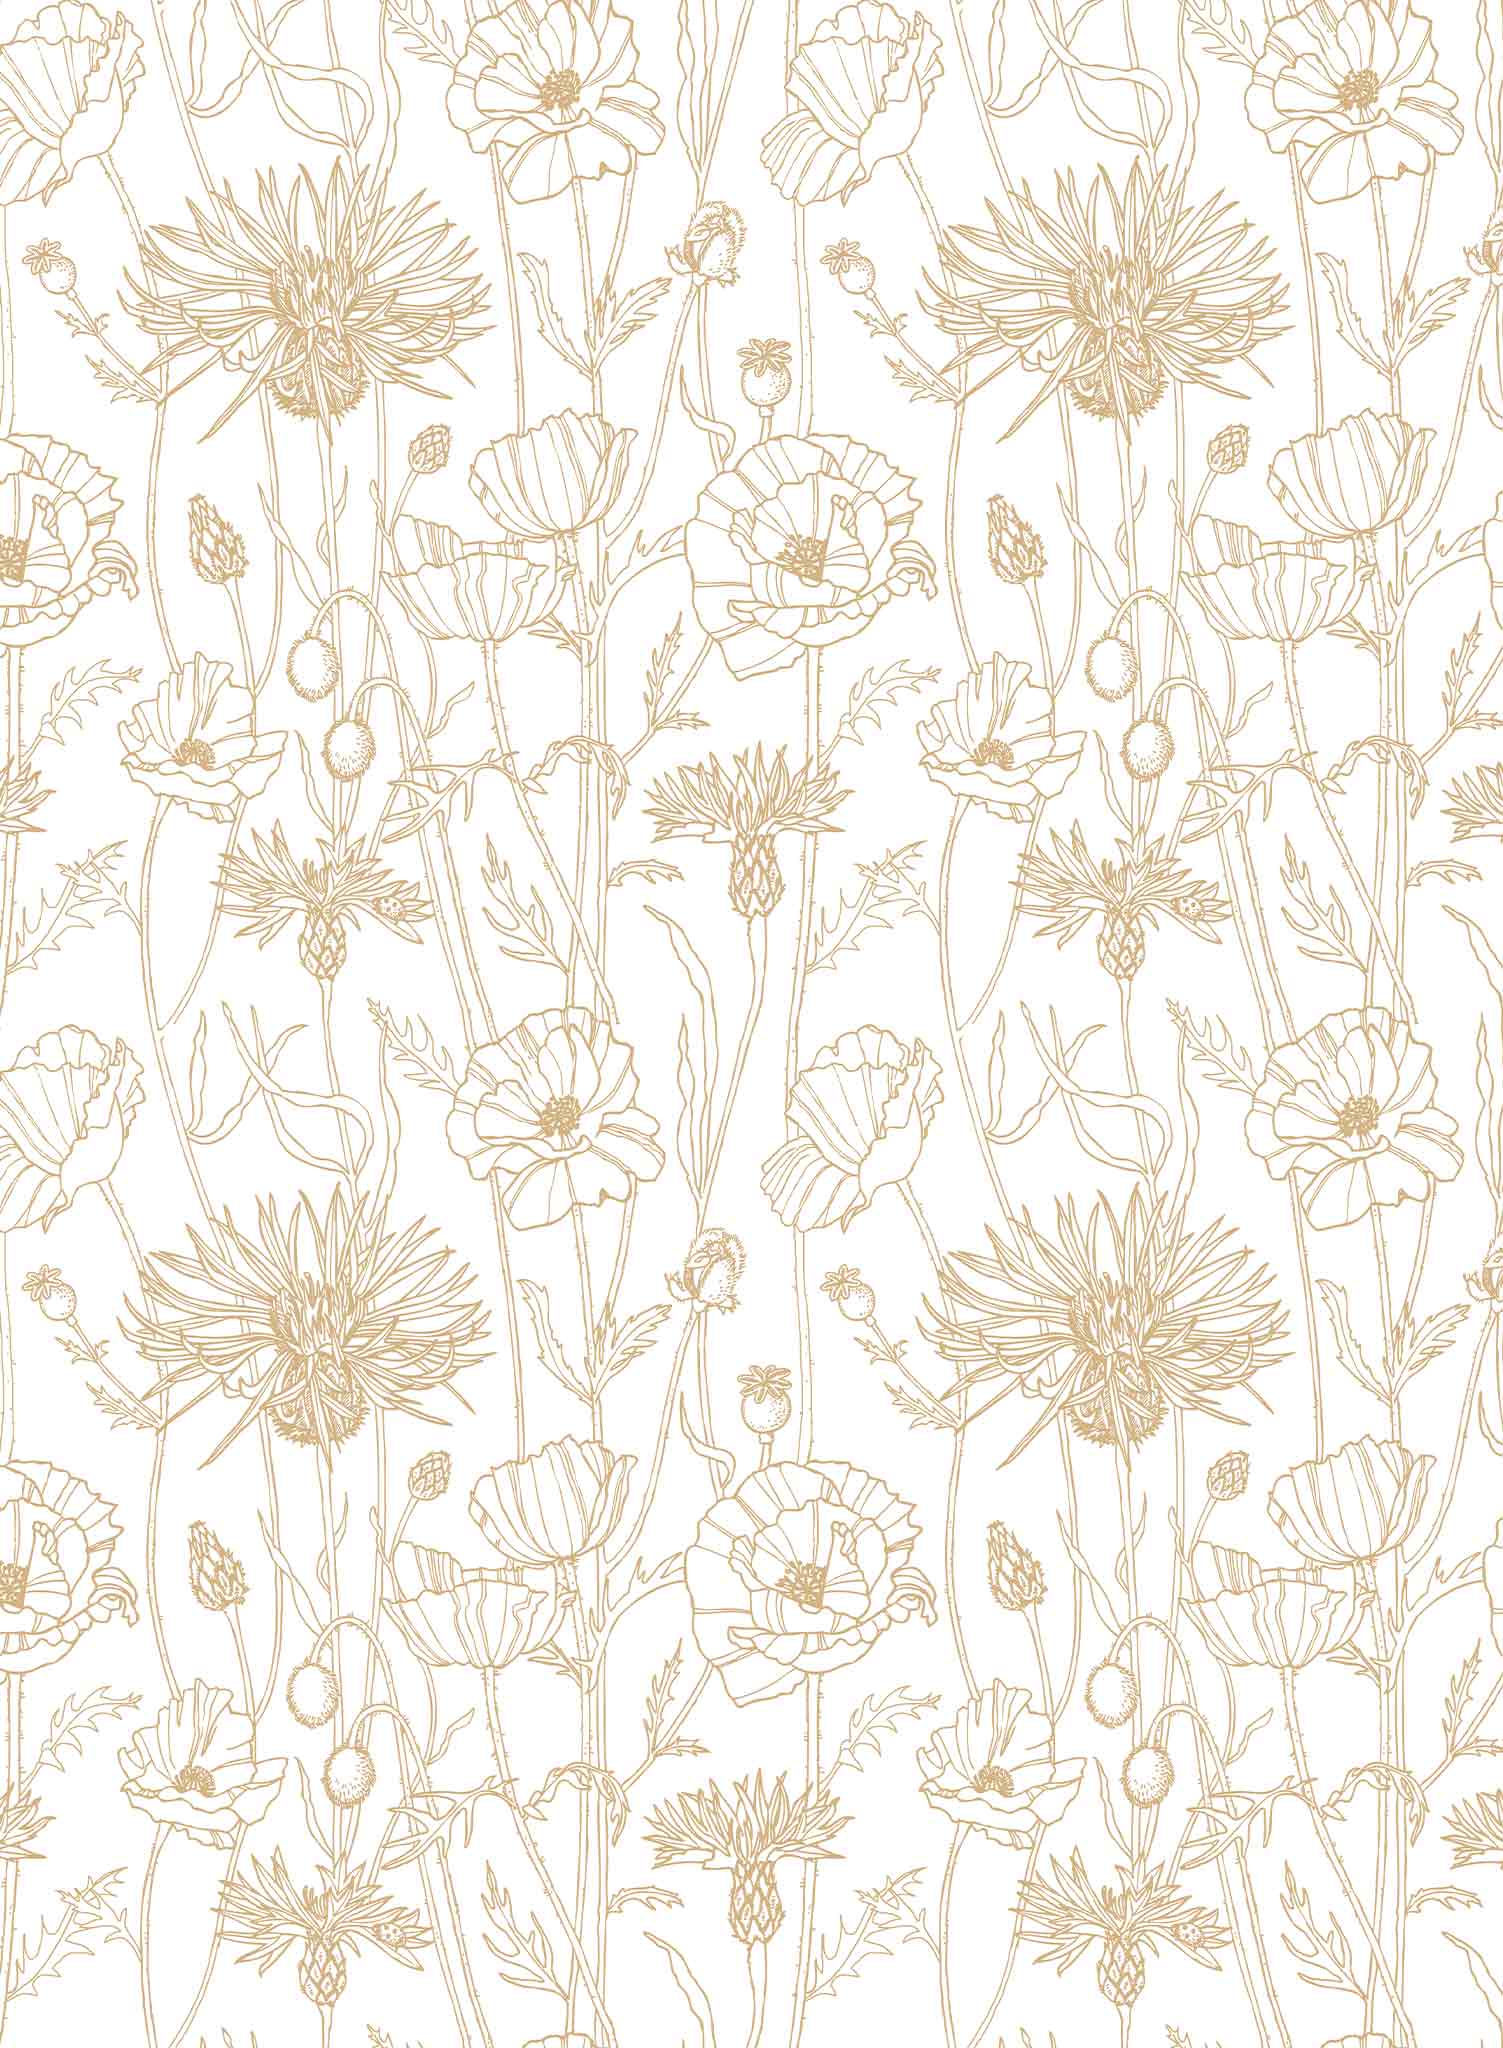 Poppy Field is a minimalist wallpaper by Opposite Wall of a field of tall poppy flowers.